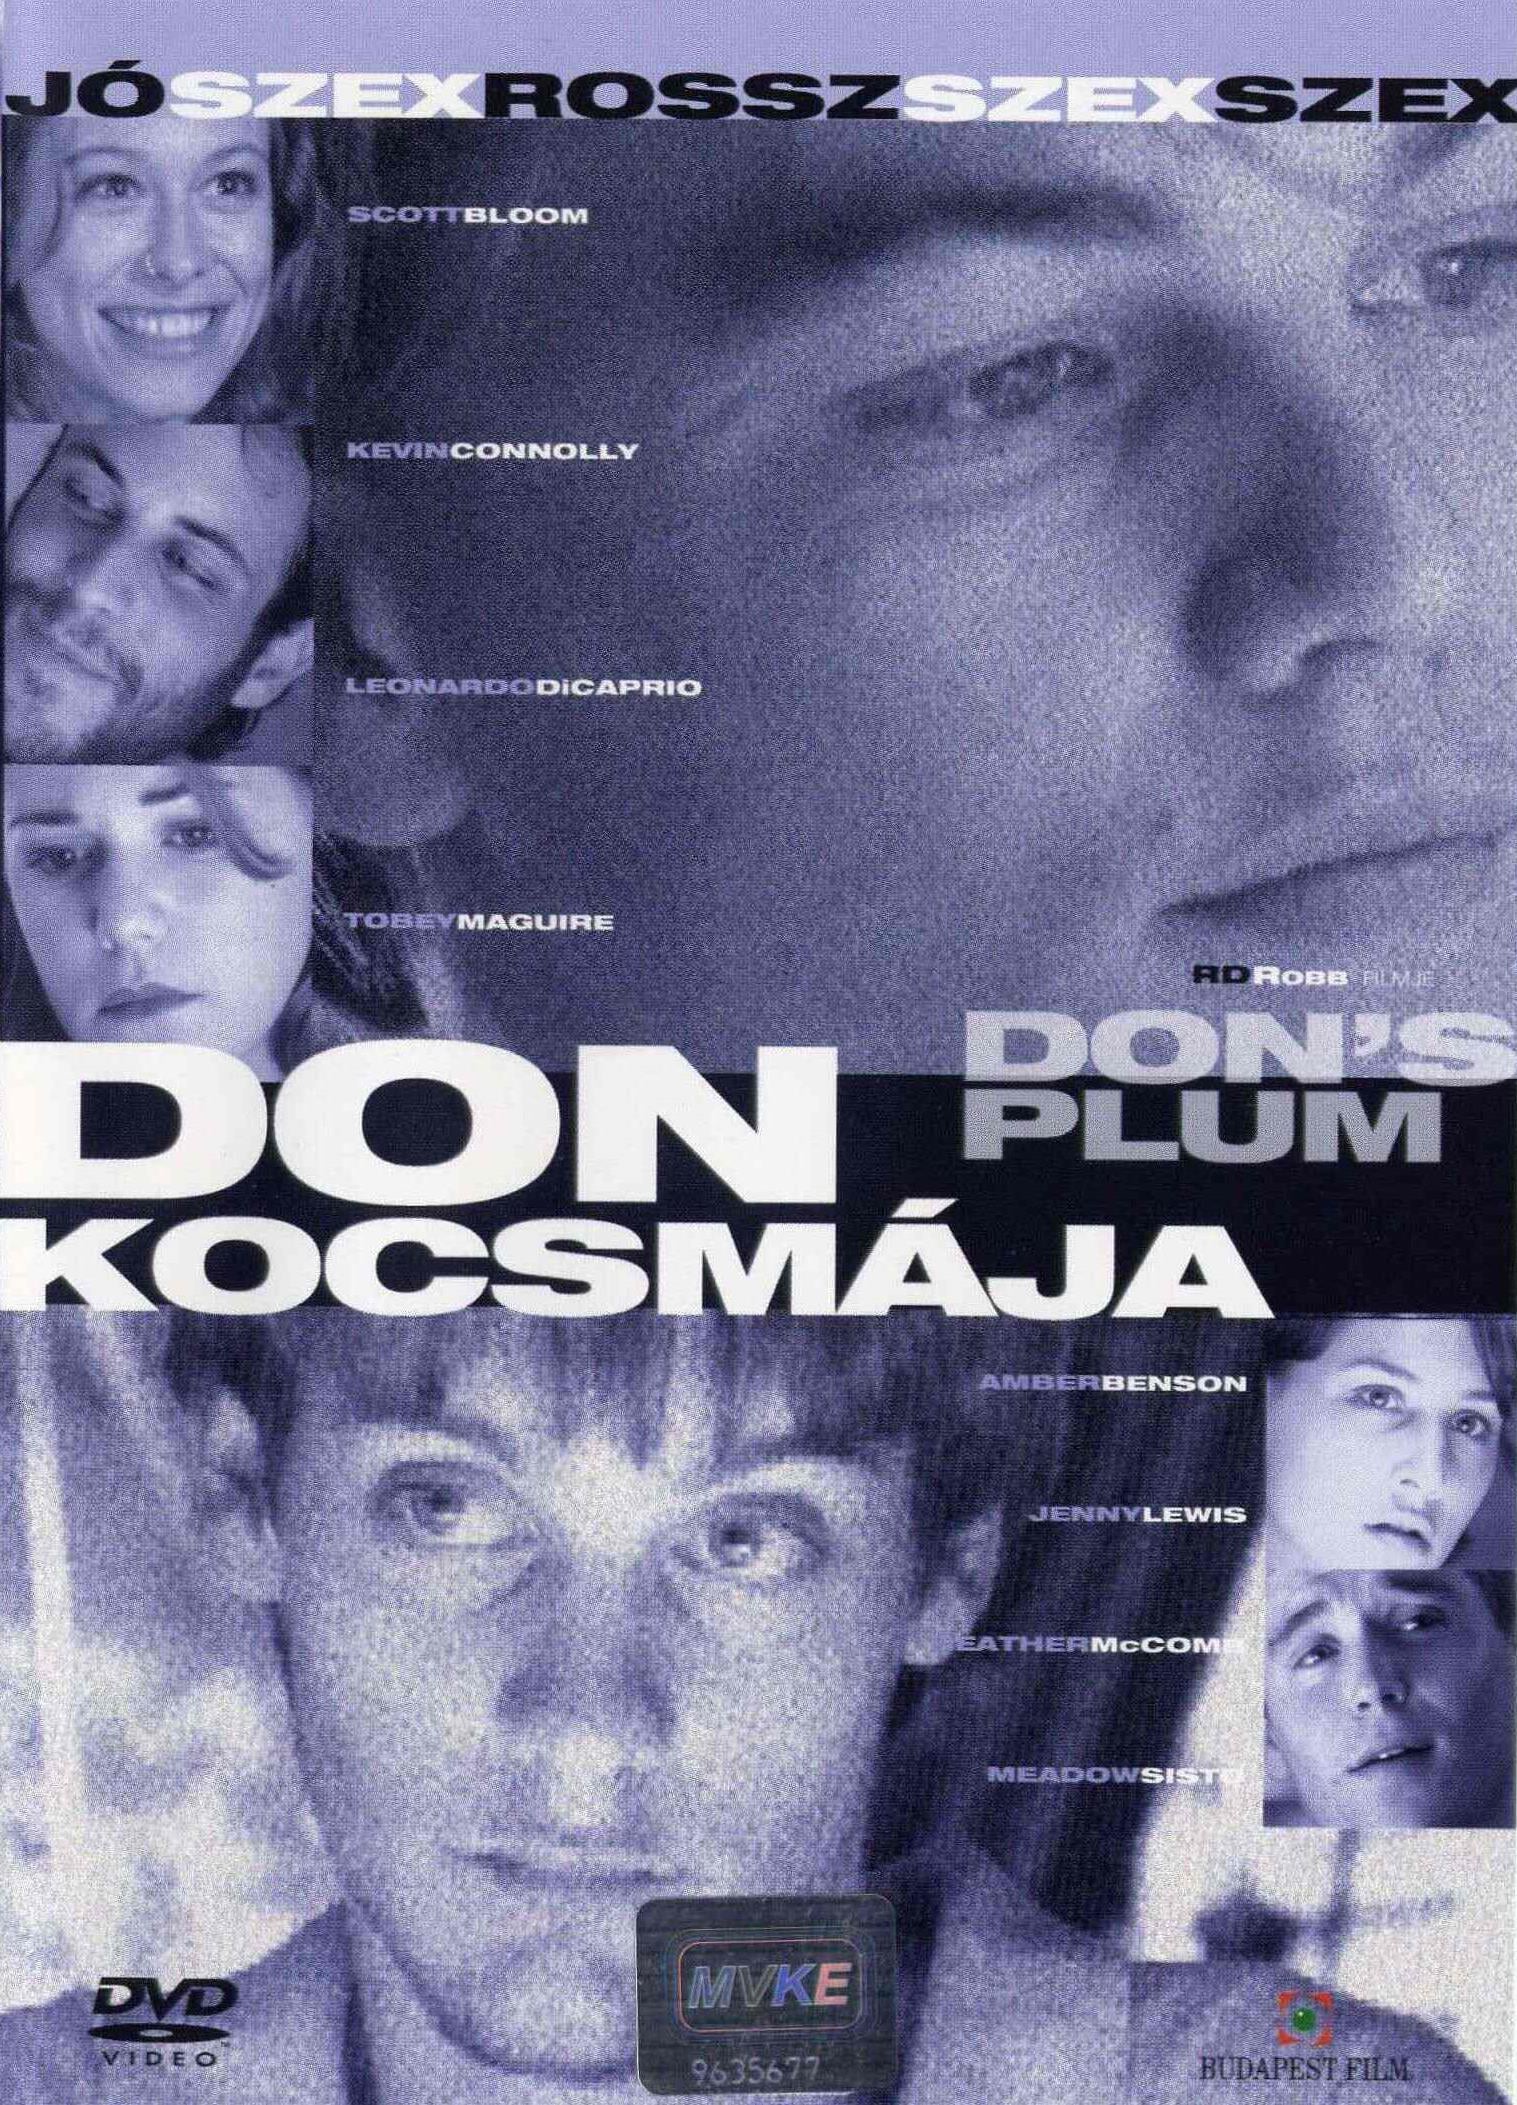 Plakat von "Don's Plum"